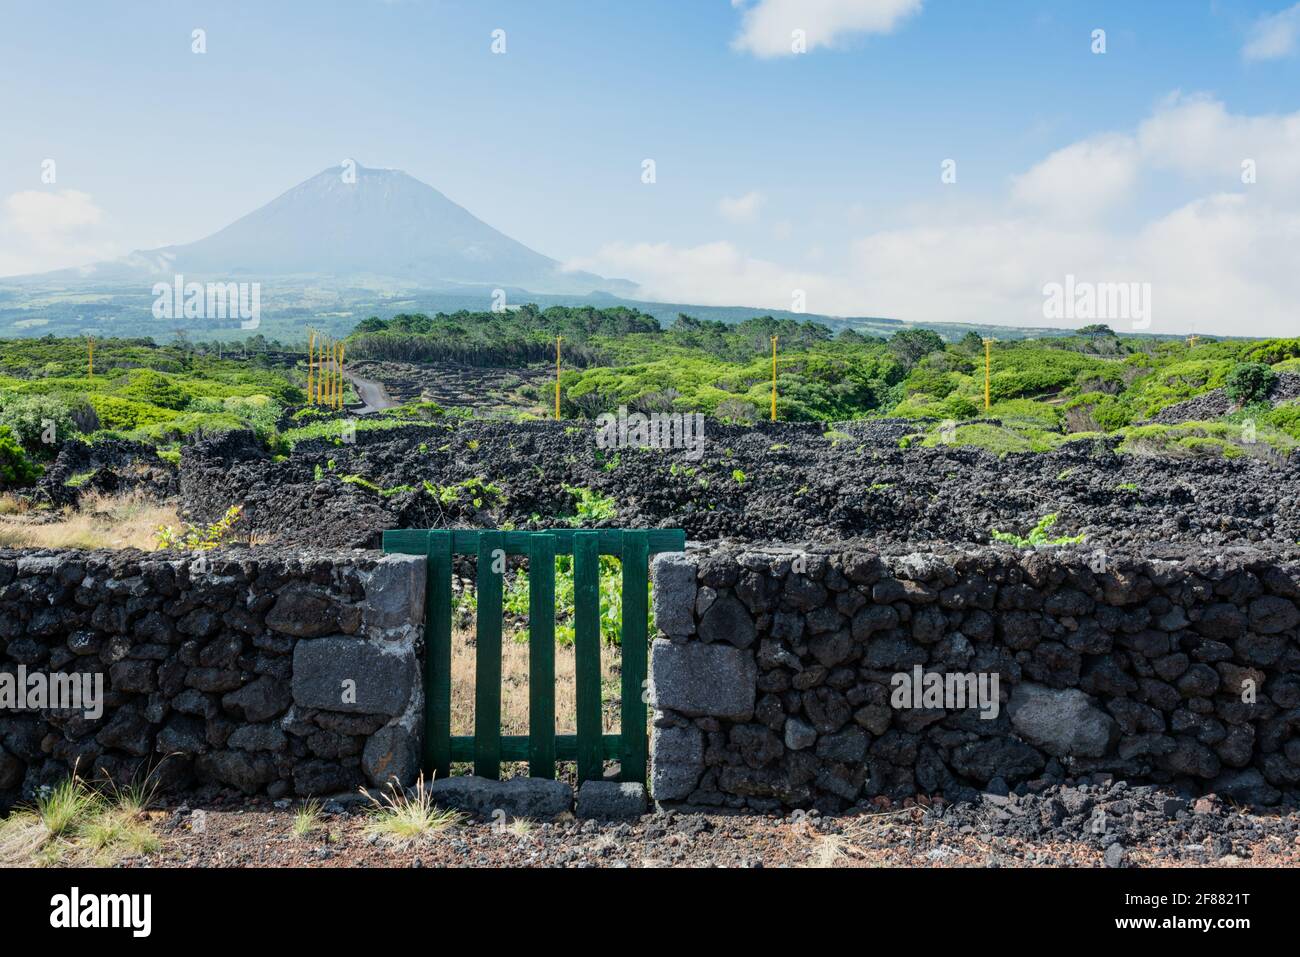 Weinberge mit Blick auf den Berg Pico auf der Insel Pico, Azoren. Die Azoren sind für ihre vulkanischen (meist weißen) Weine bekannt. Stockfoto